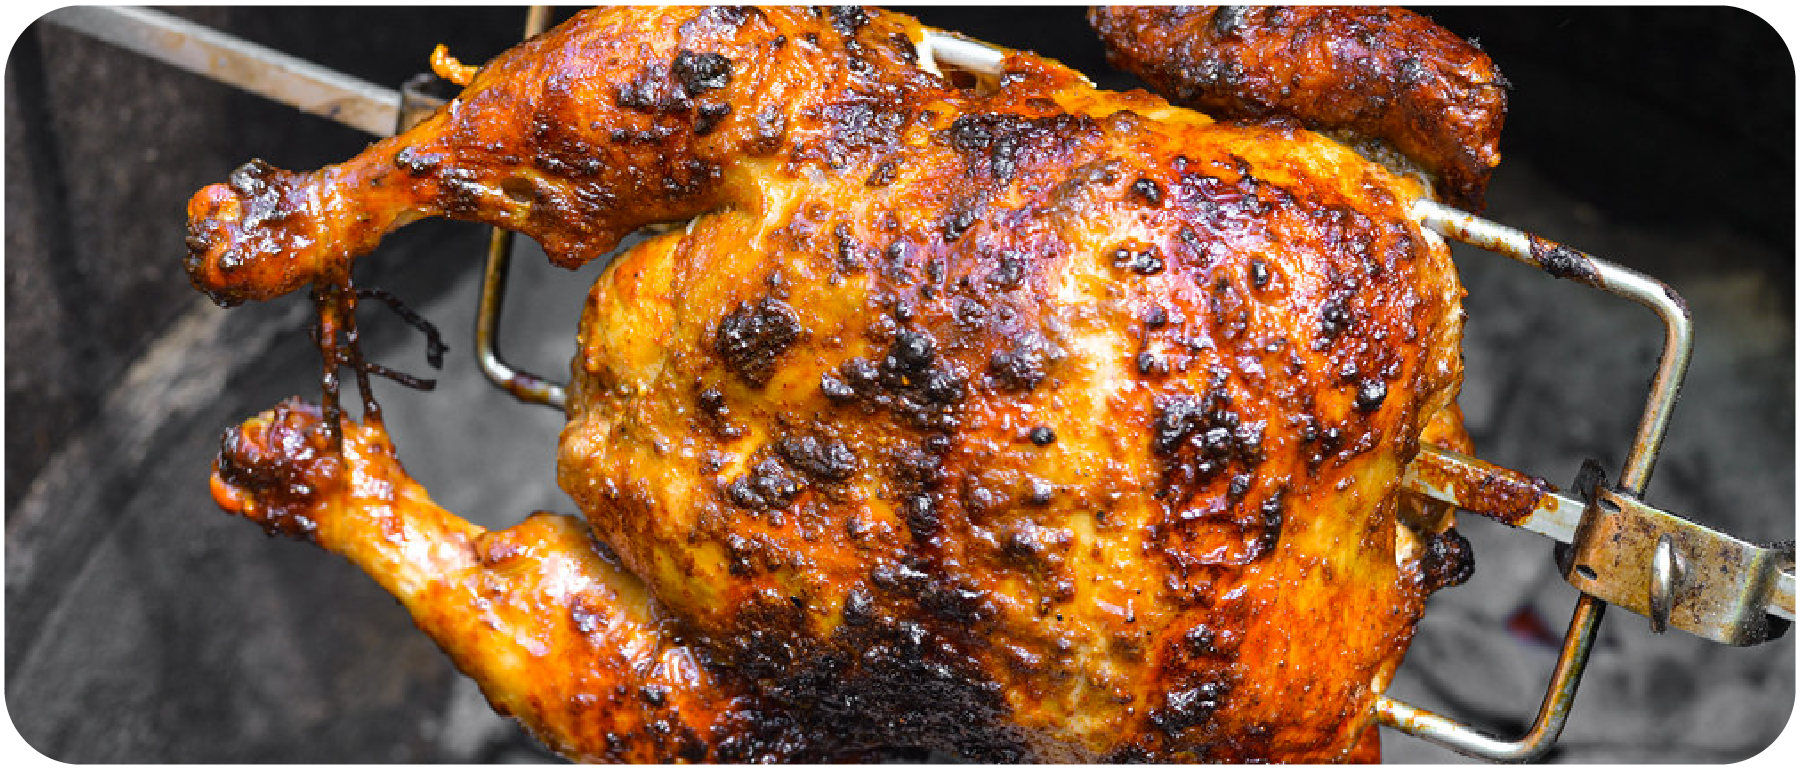 Easy Peruvian Rotisserie Chicken Recipe – Pollo a la Brasa